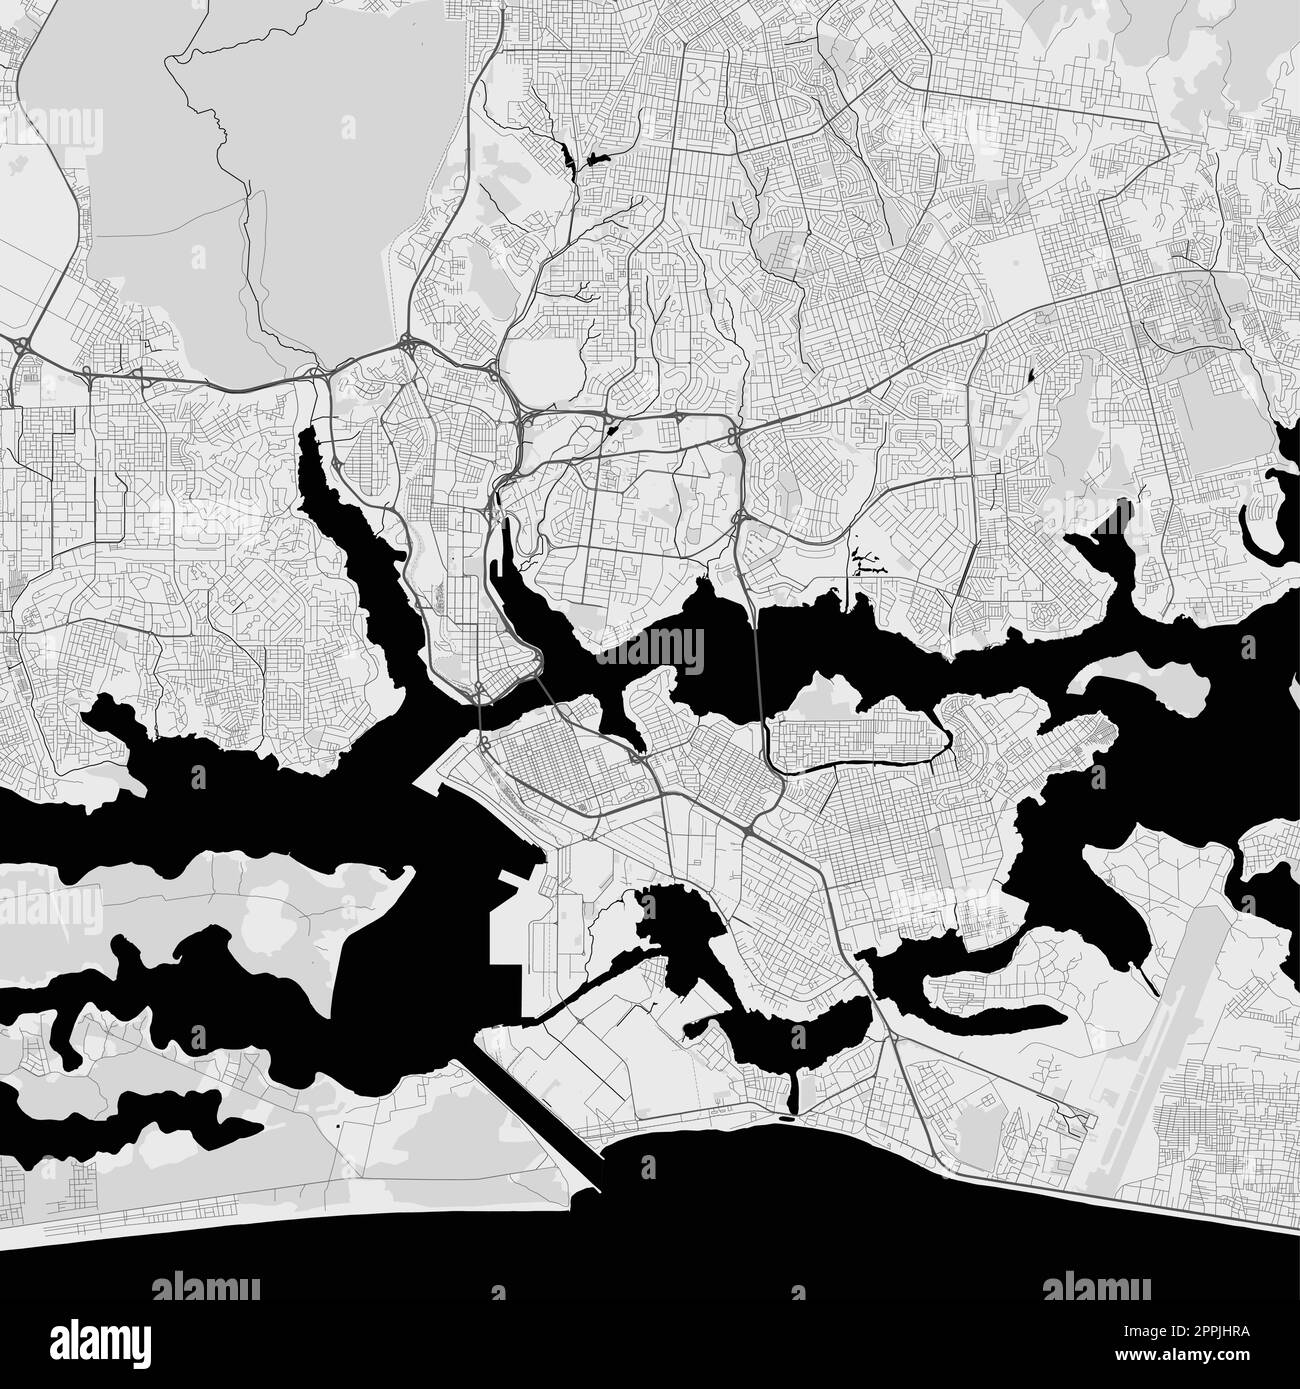 Carte de la ville d'Abidjan, Côte d'Ivoire. Affiche urbaine noir et blanc. Carte routière avec vue de la région métropolitaine. Illustration de Vecteur